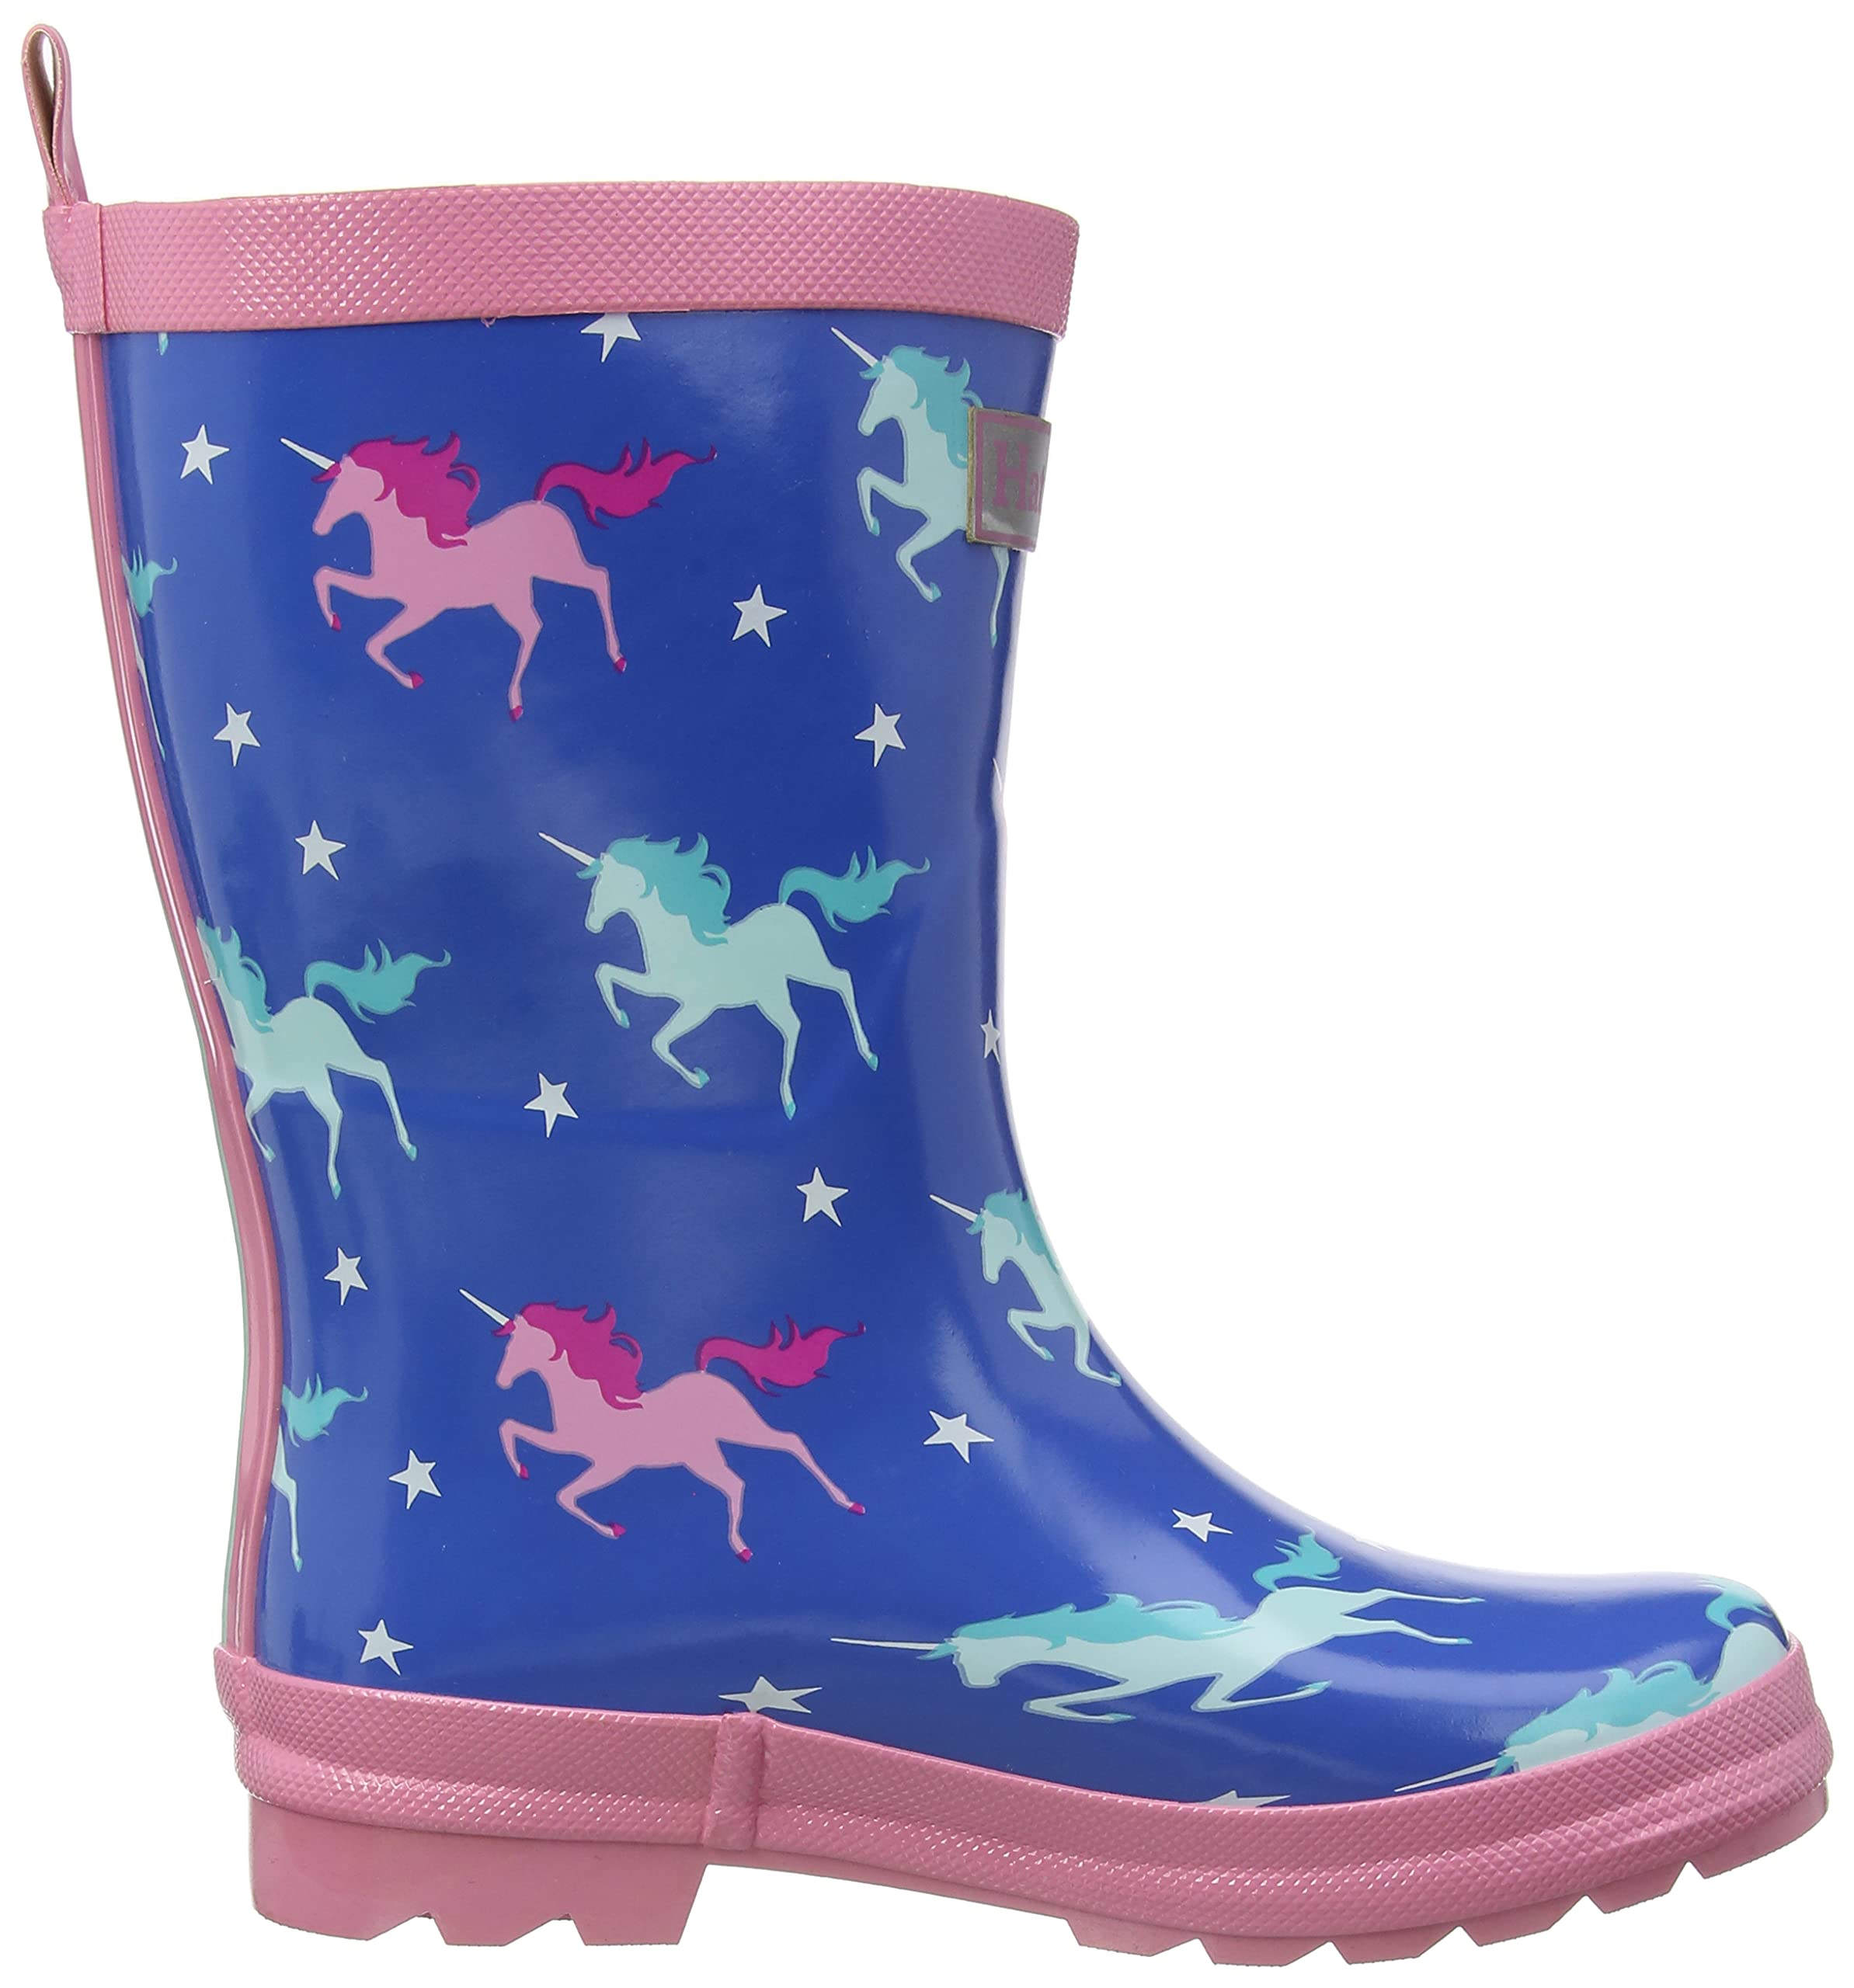 Hatley Girls Rain Boot, Twinkle Unicorns, 4 Toddler